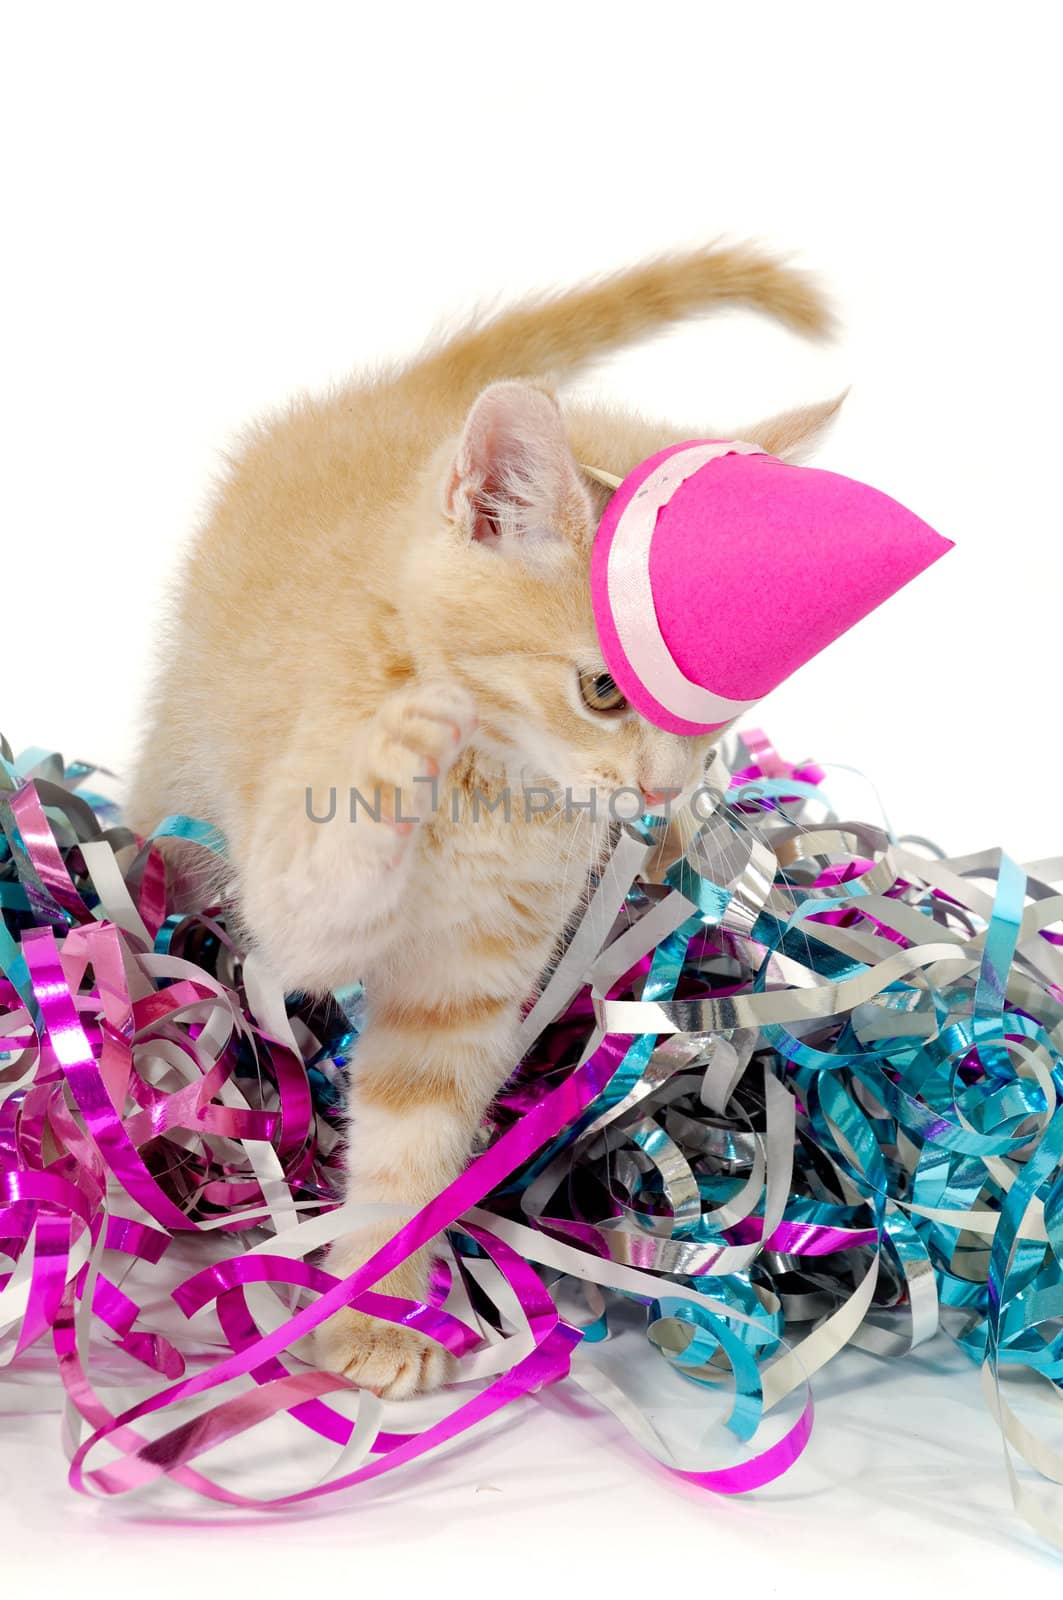 Sweet cat kitten with hat in confetti